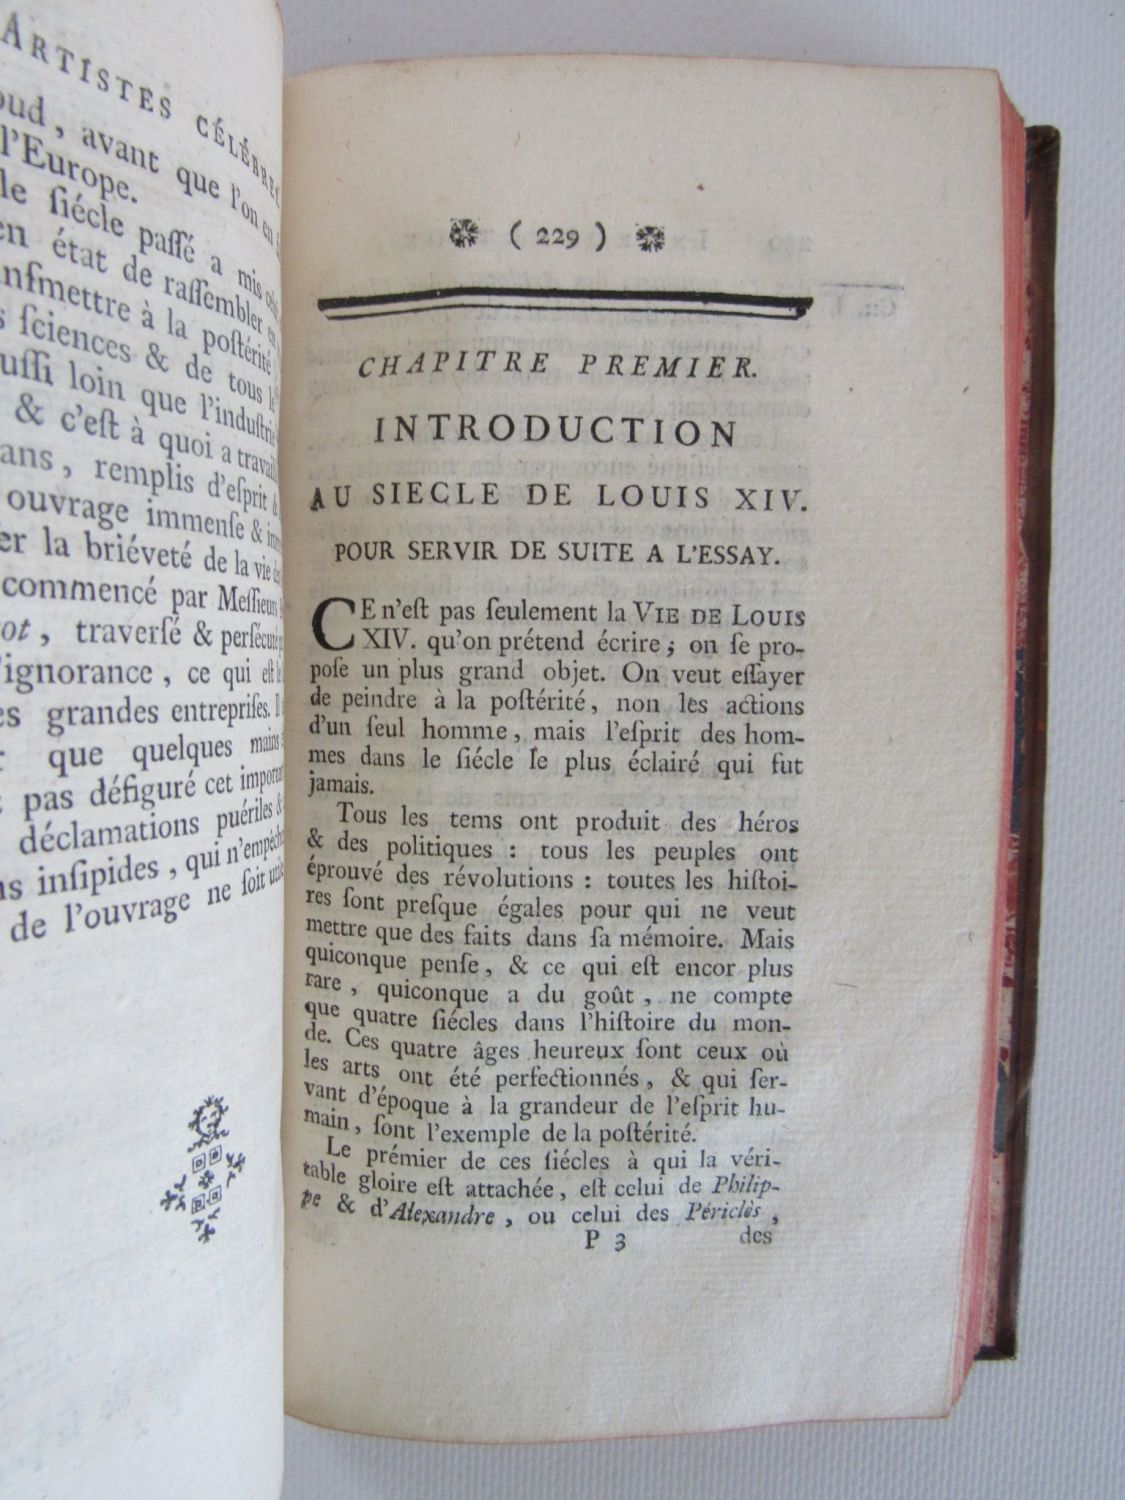 Le Siècle de Louis XIV book by Voltaire